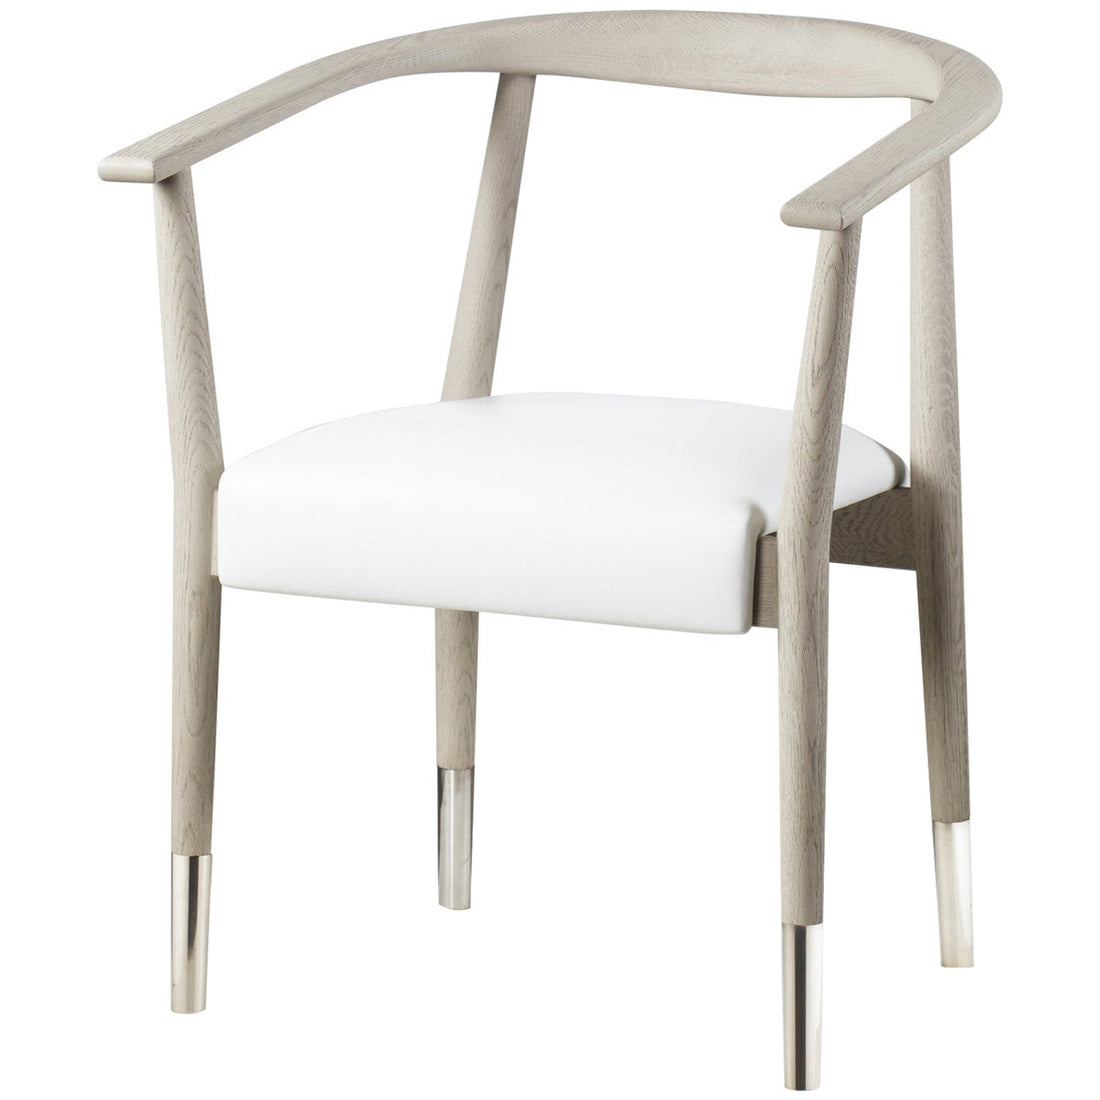 Sonder Living Soho Dining Chair - Gray Oak